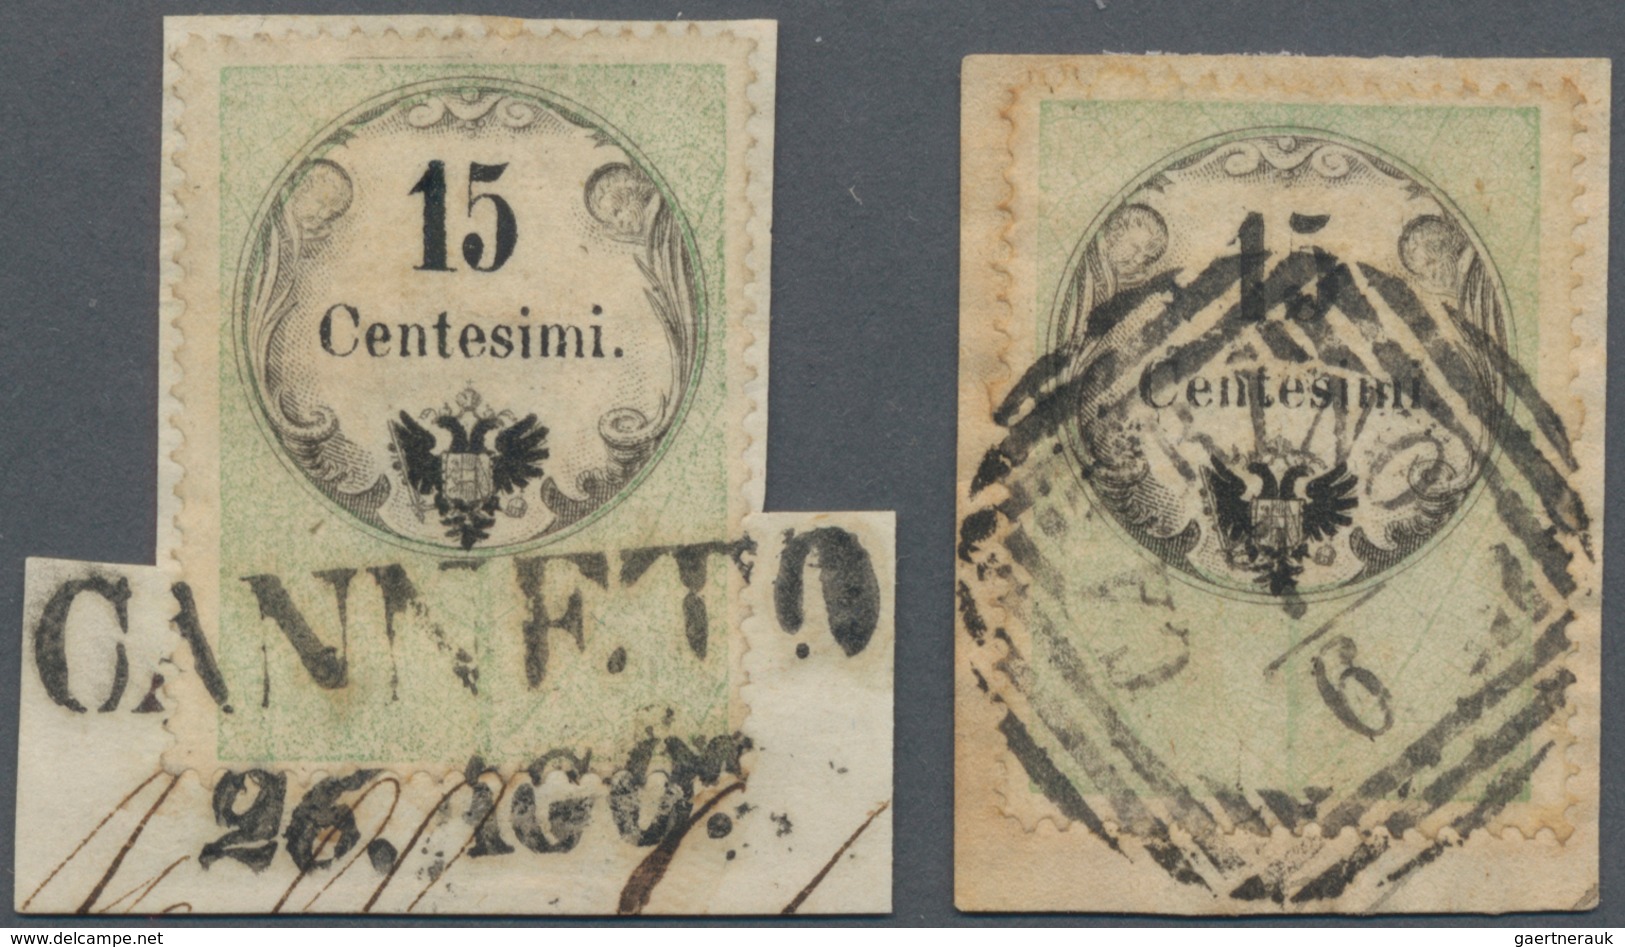 Österreich - Lombardei Und Venetien - Stempelmarken: 1854, 15 C Grün/schwarz, Buchdruck, Zwei Exempl - Lombardo-Venetien